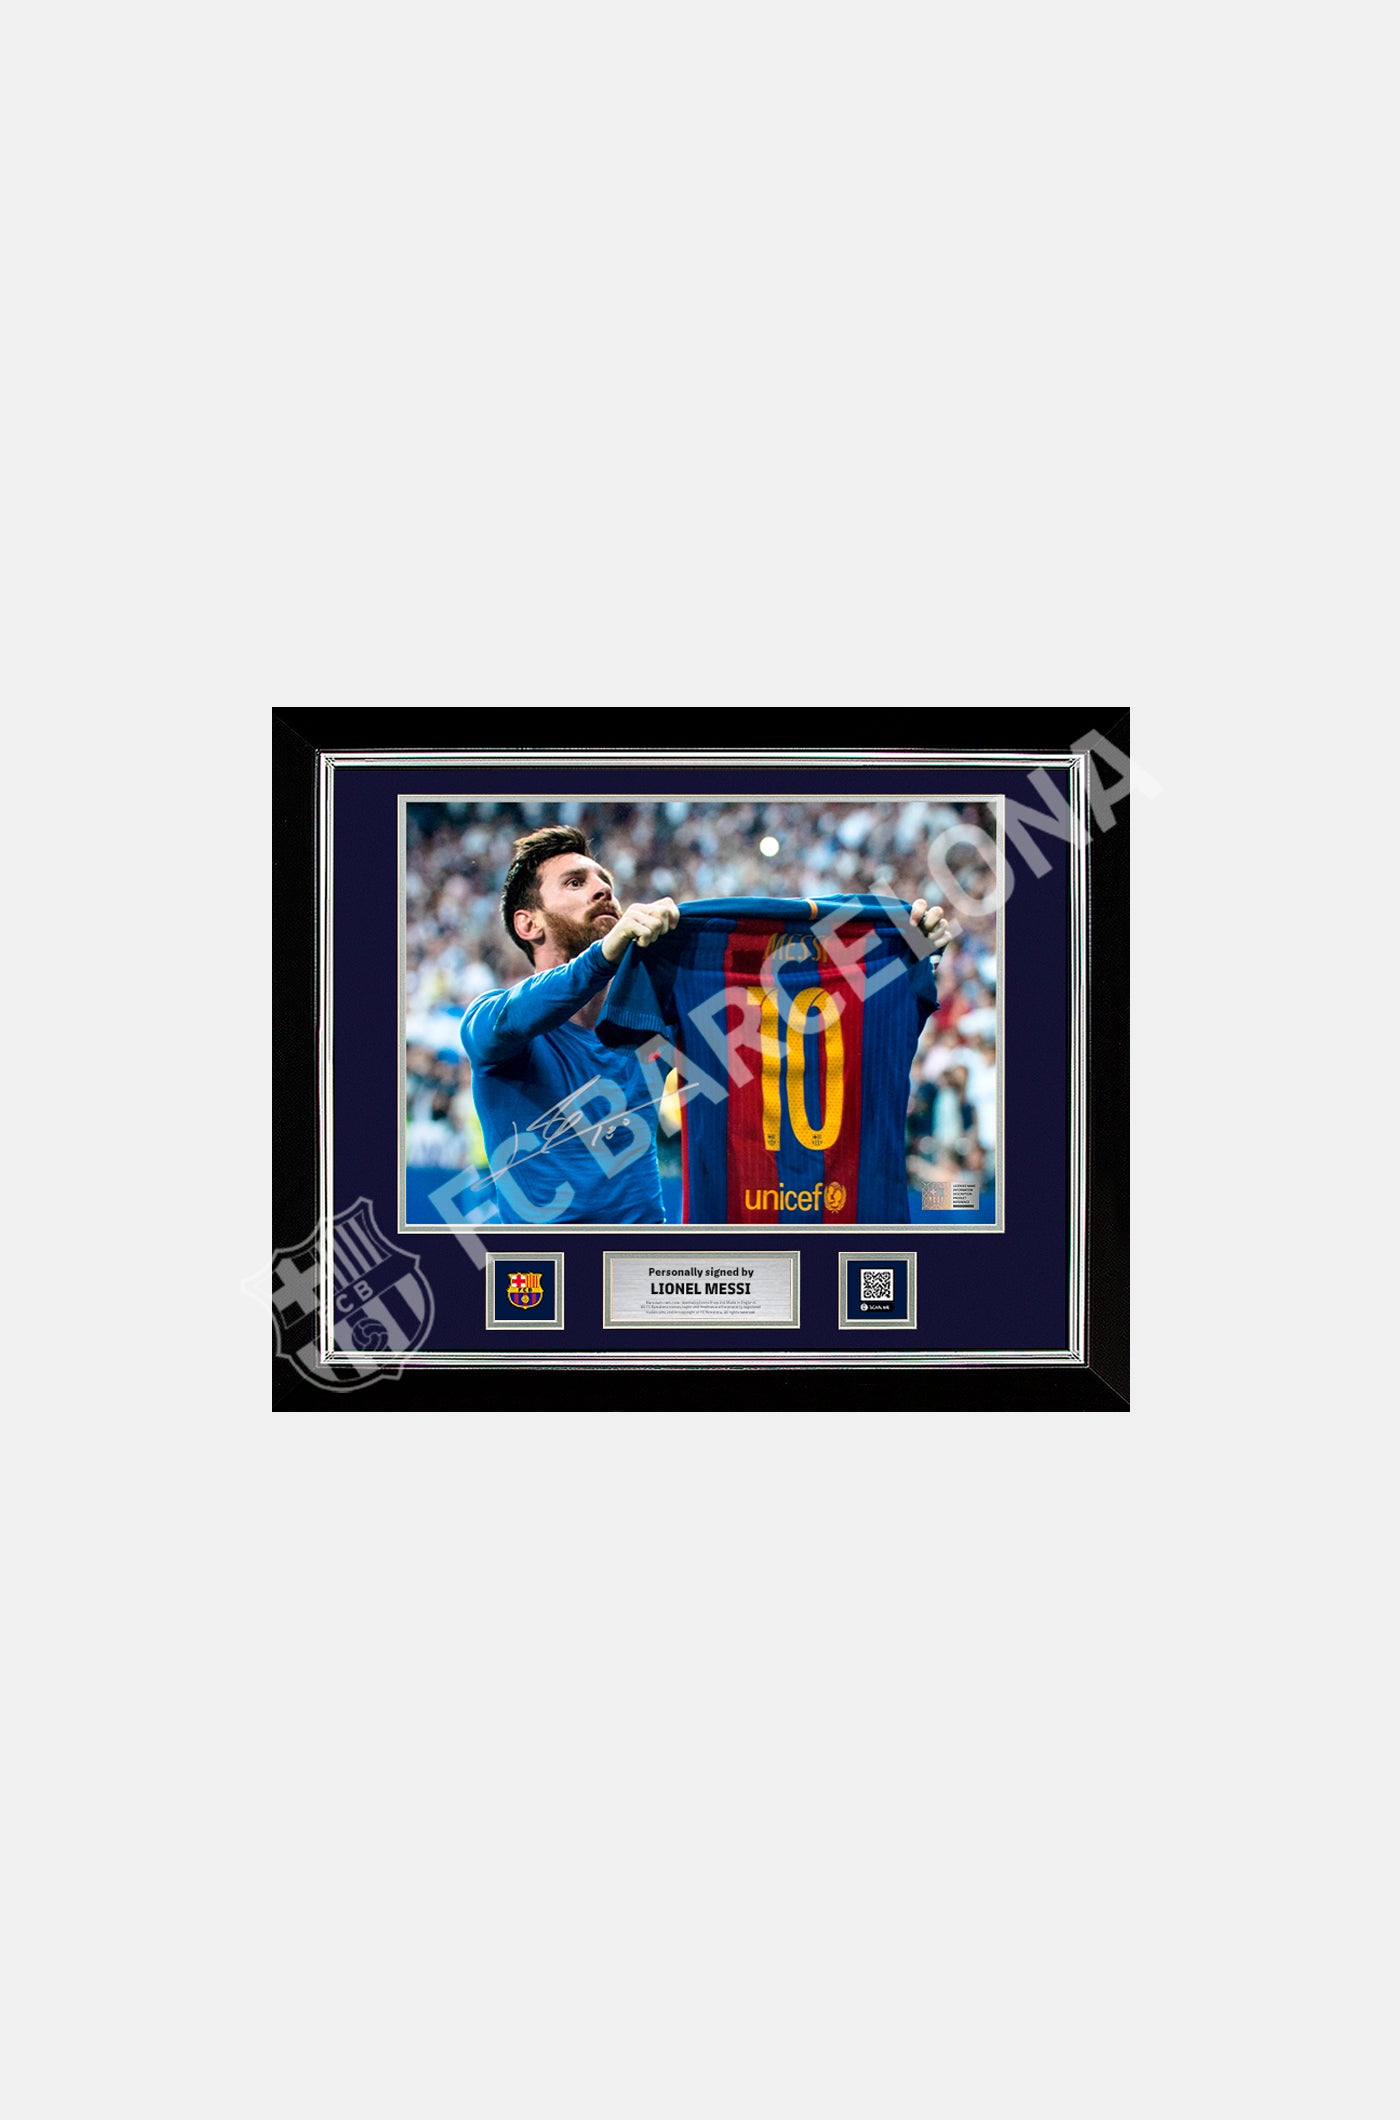 Fotografía oficial del FC Barcelona de la icónica celebración del clásico firmada y enmarcada por Lionel Messi